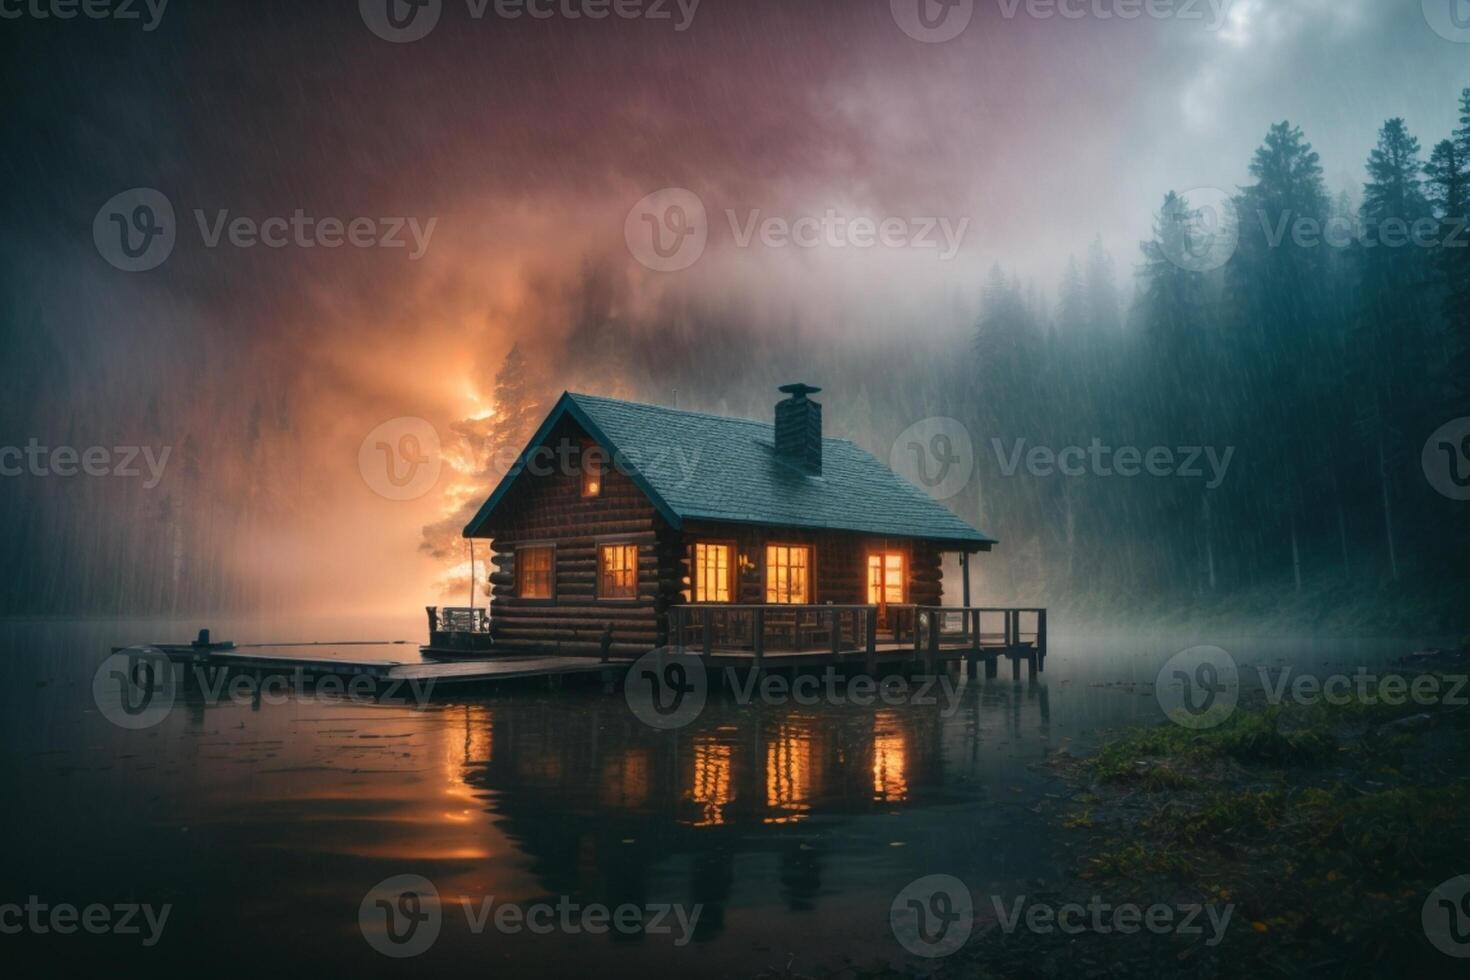 een cabine zit Aan de kust van een meer in de mist foto